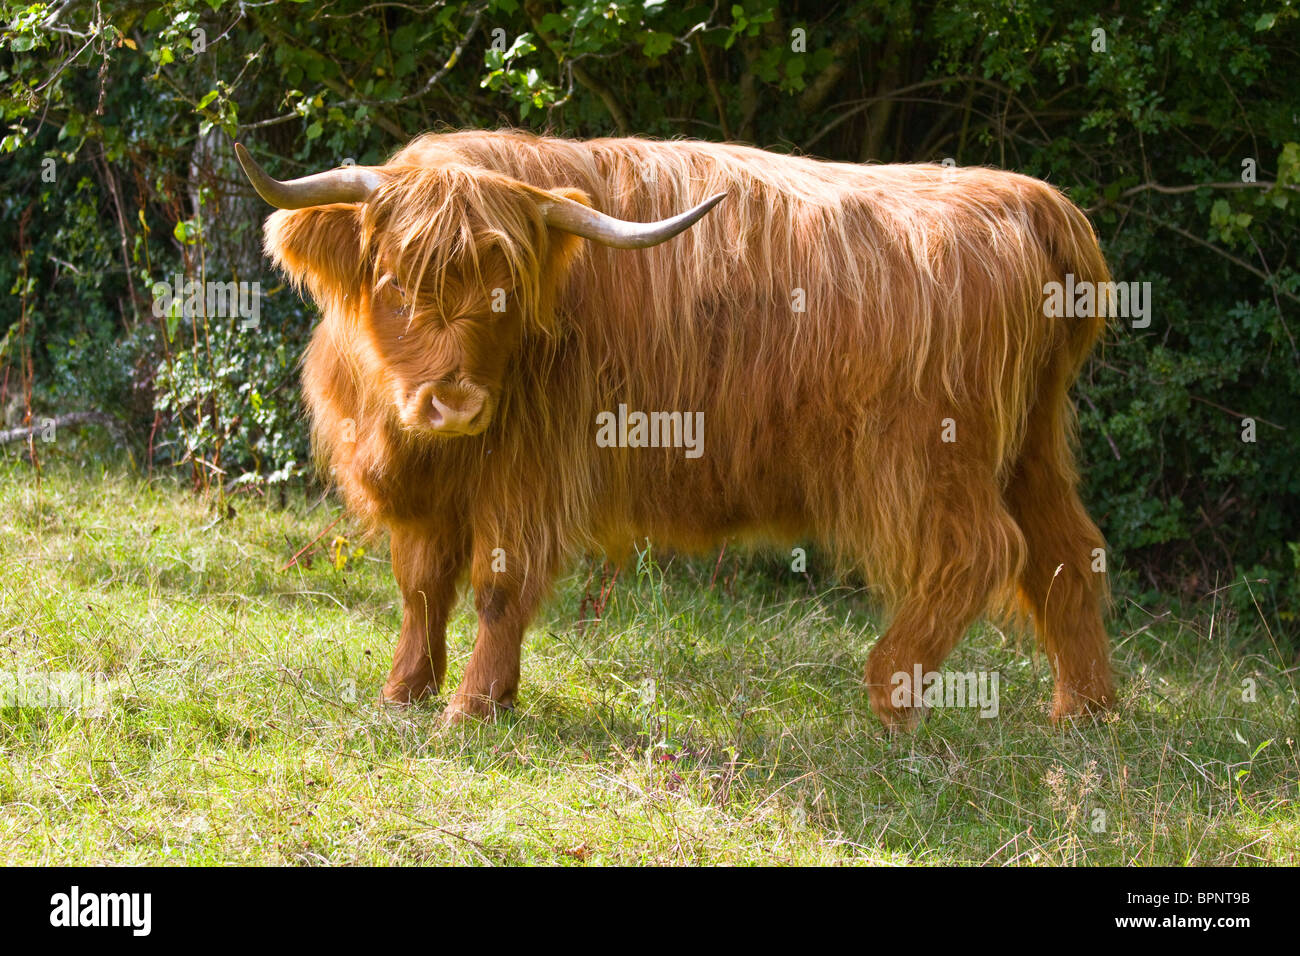 Highland long horned cattle Stock Photo